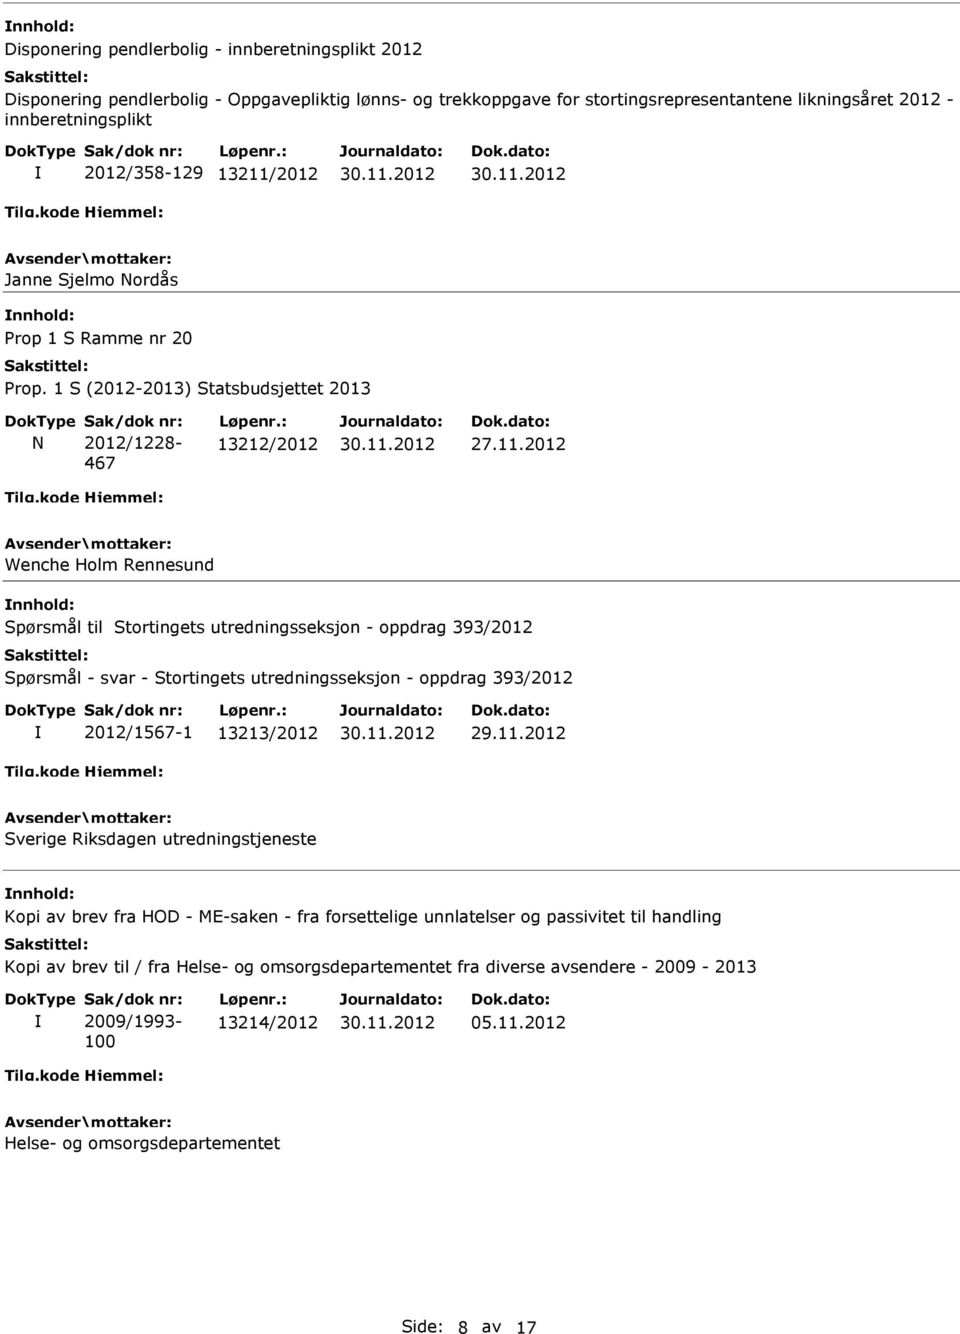 2012 Janne Sjelmo Nordås Prop 1 S Ramme nr 20 Prop. 1 S (2012-2013) Statsbudsjettet 2013 N 2012/1228-467 13212/2012 27.11.